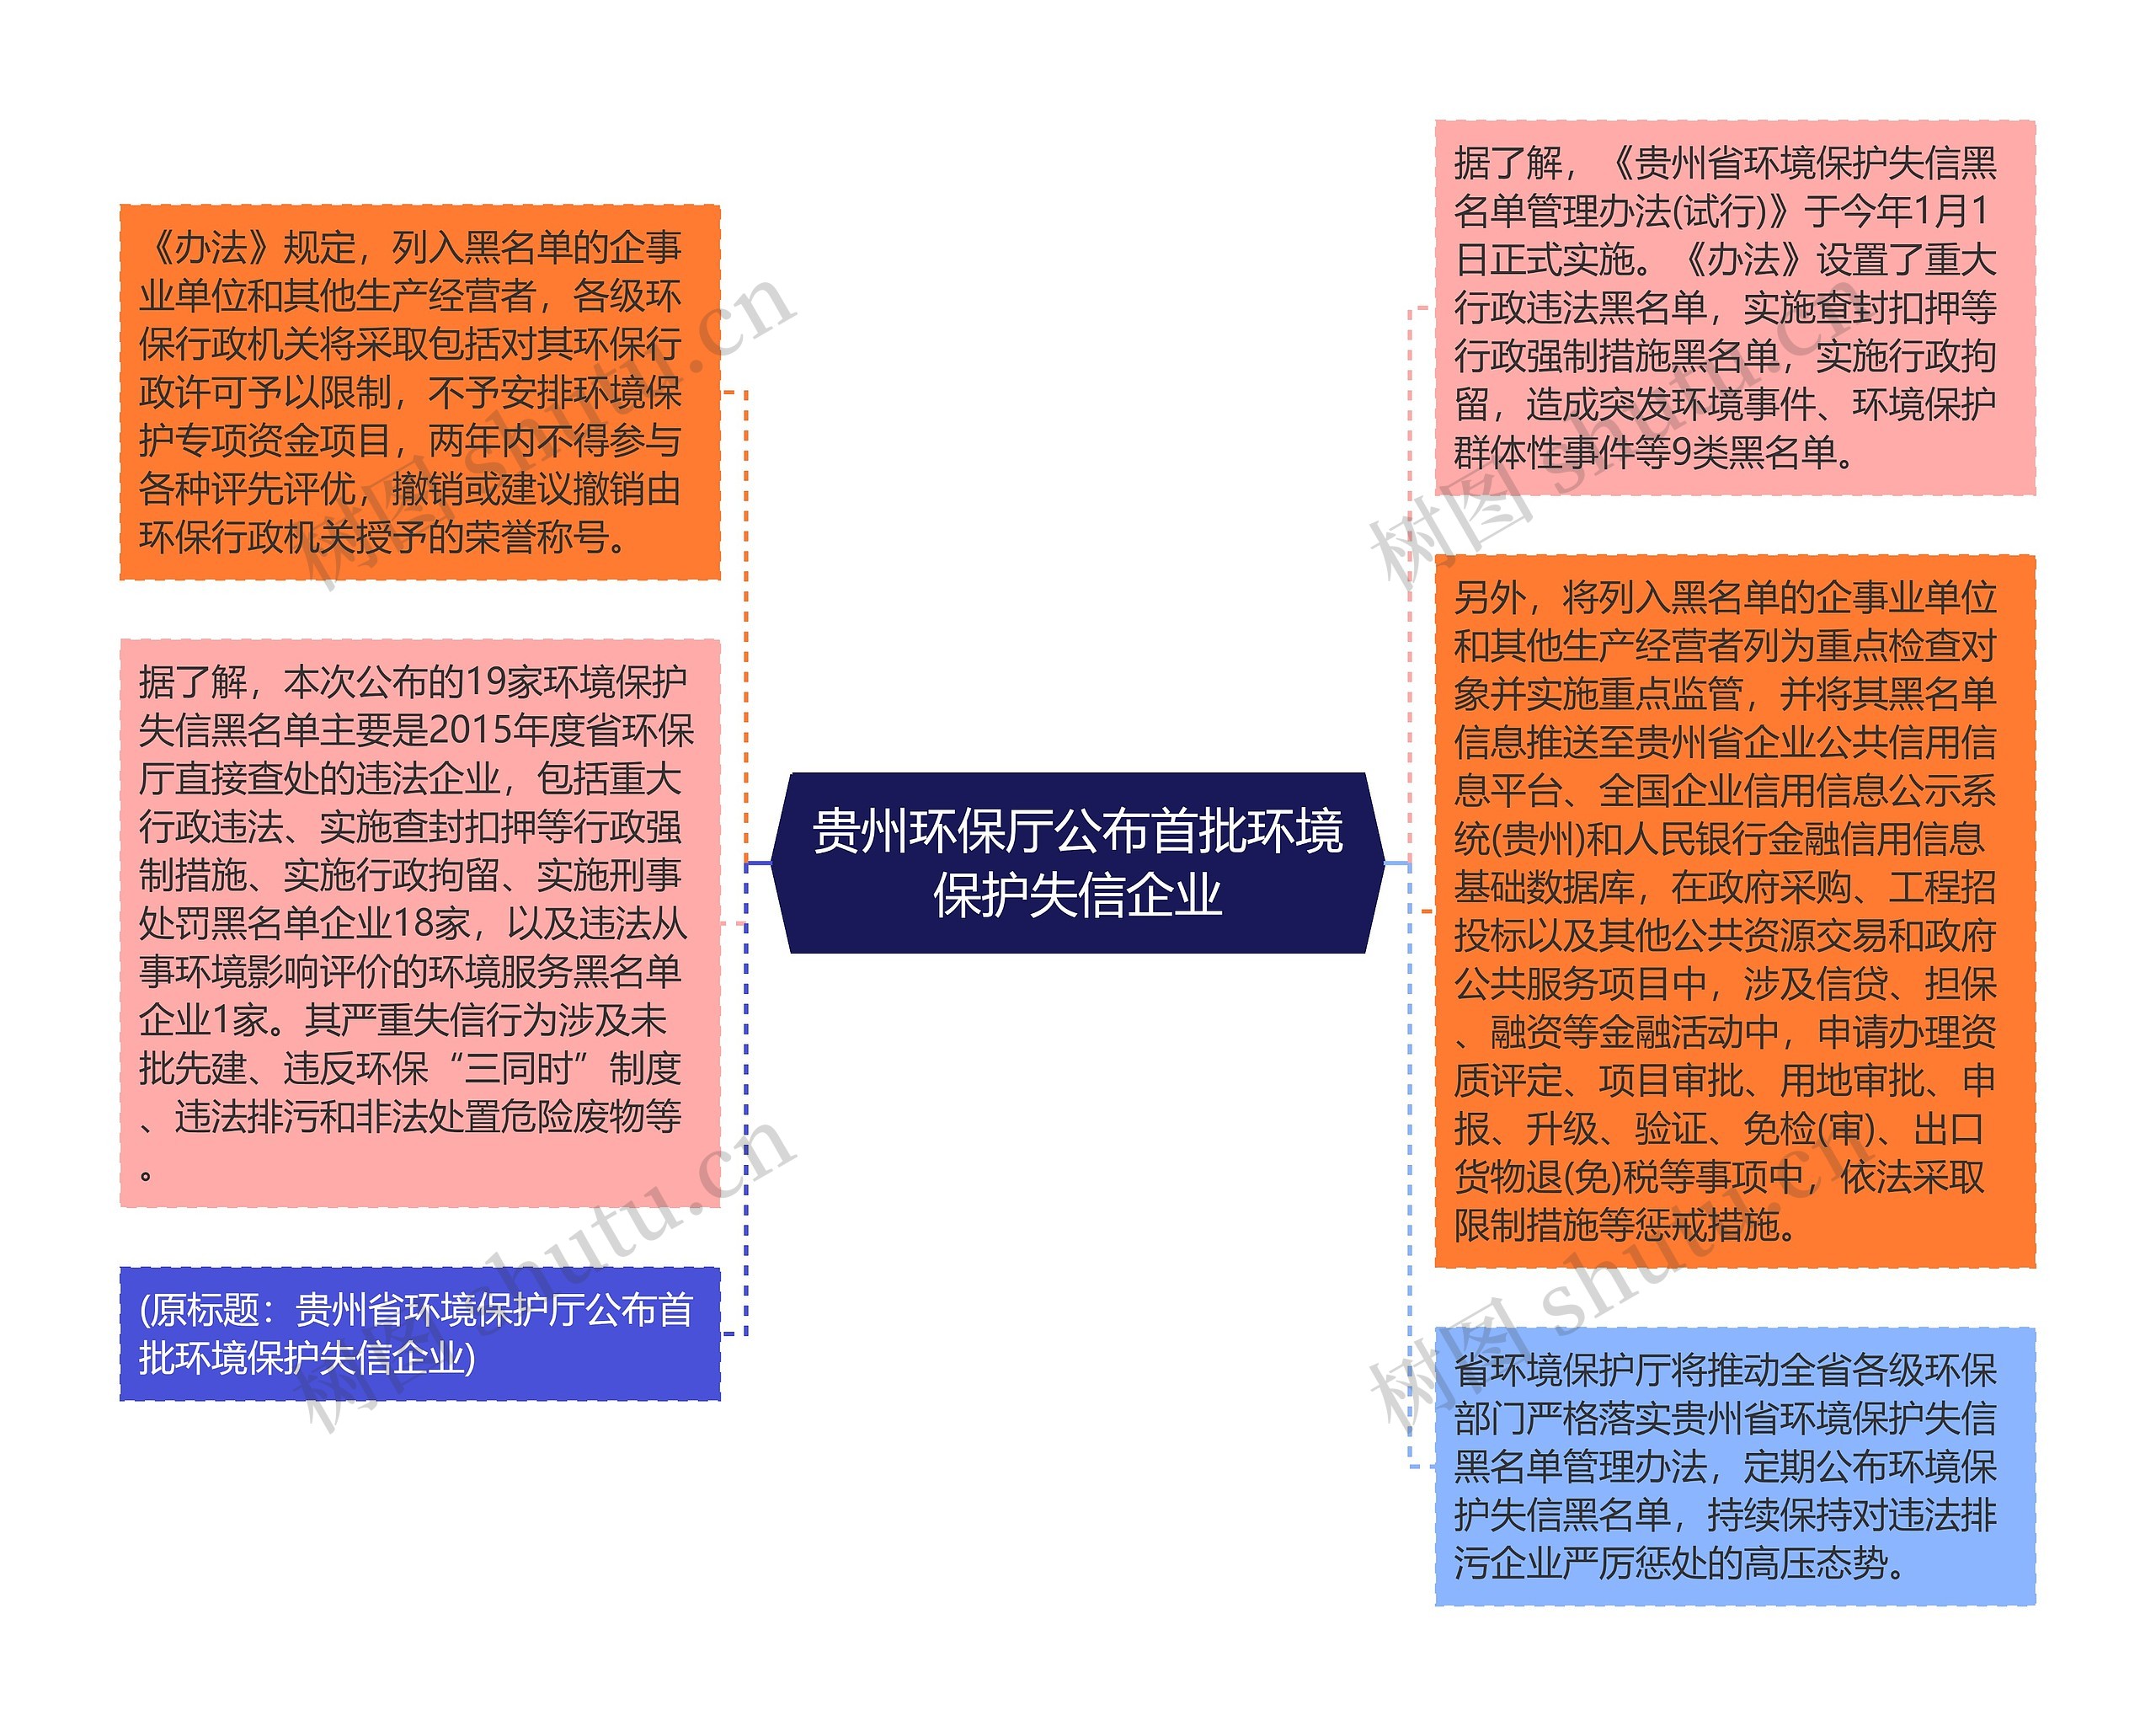 贵州环保厅公布首批环境保护失信企业思维导图